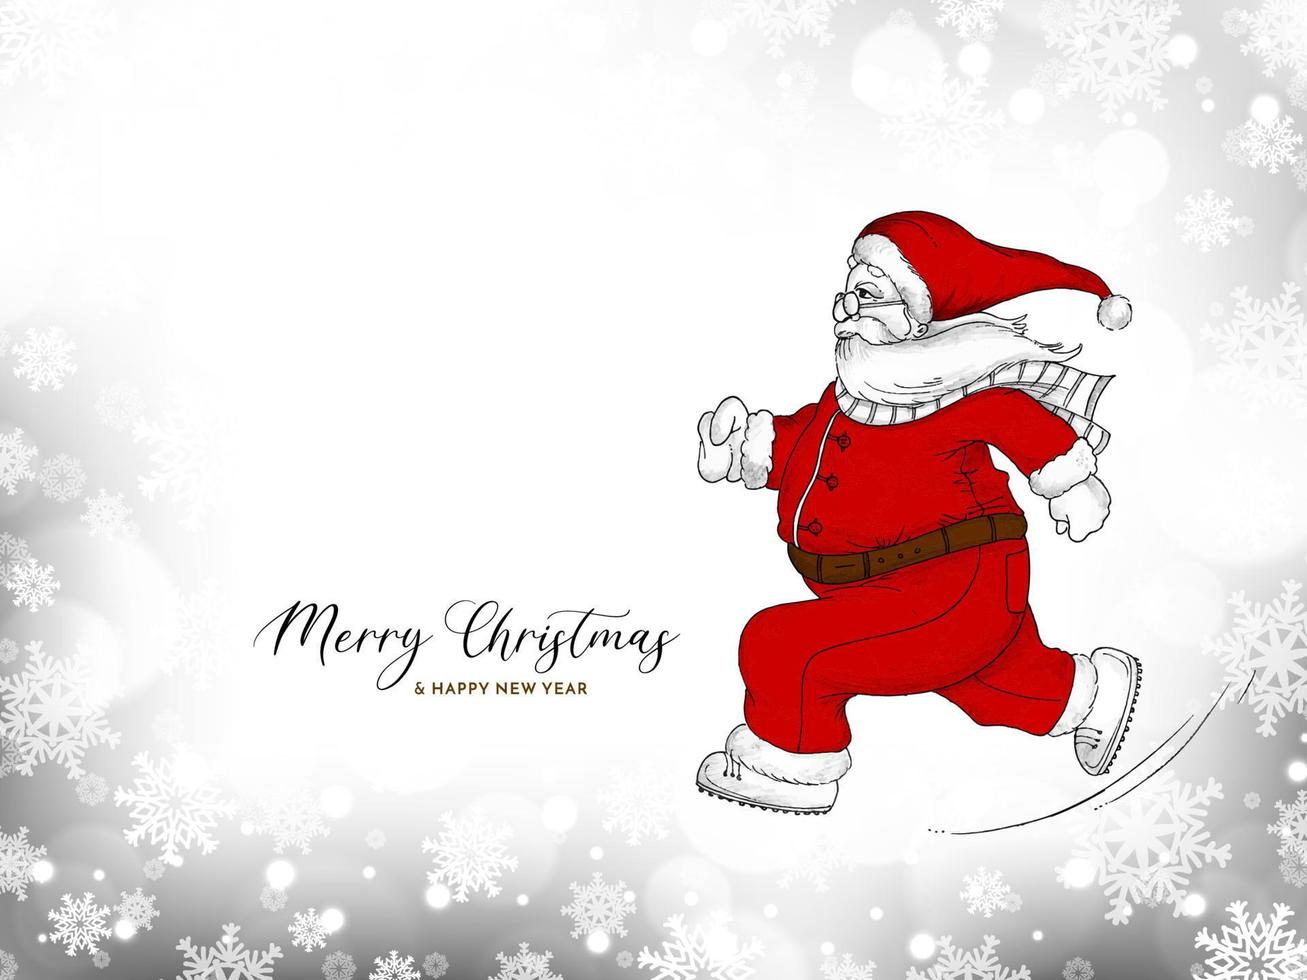 glad jul festival firande kort med santa claus vektor